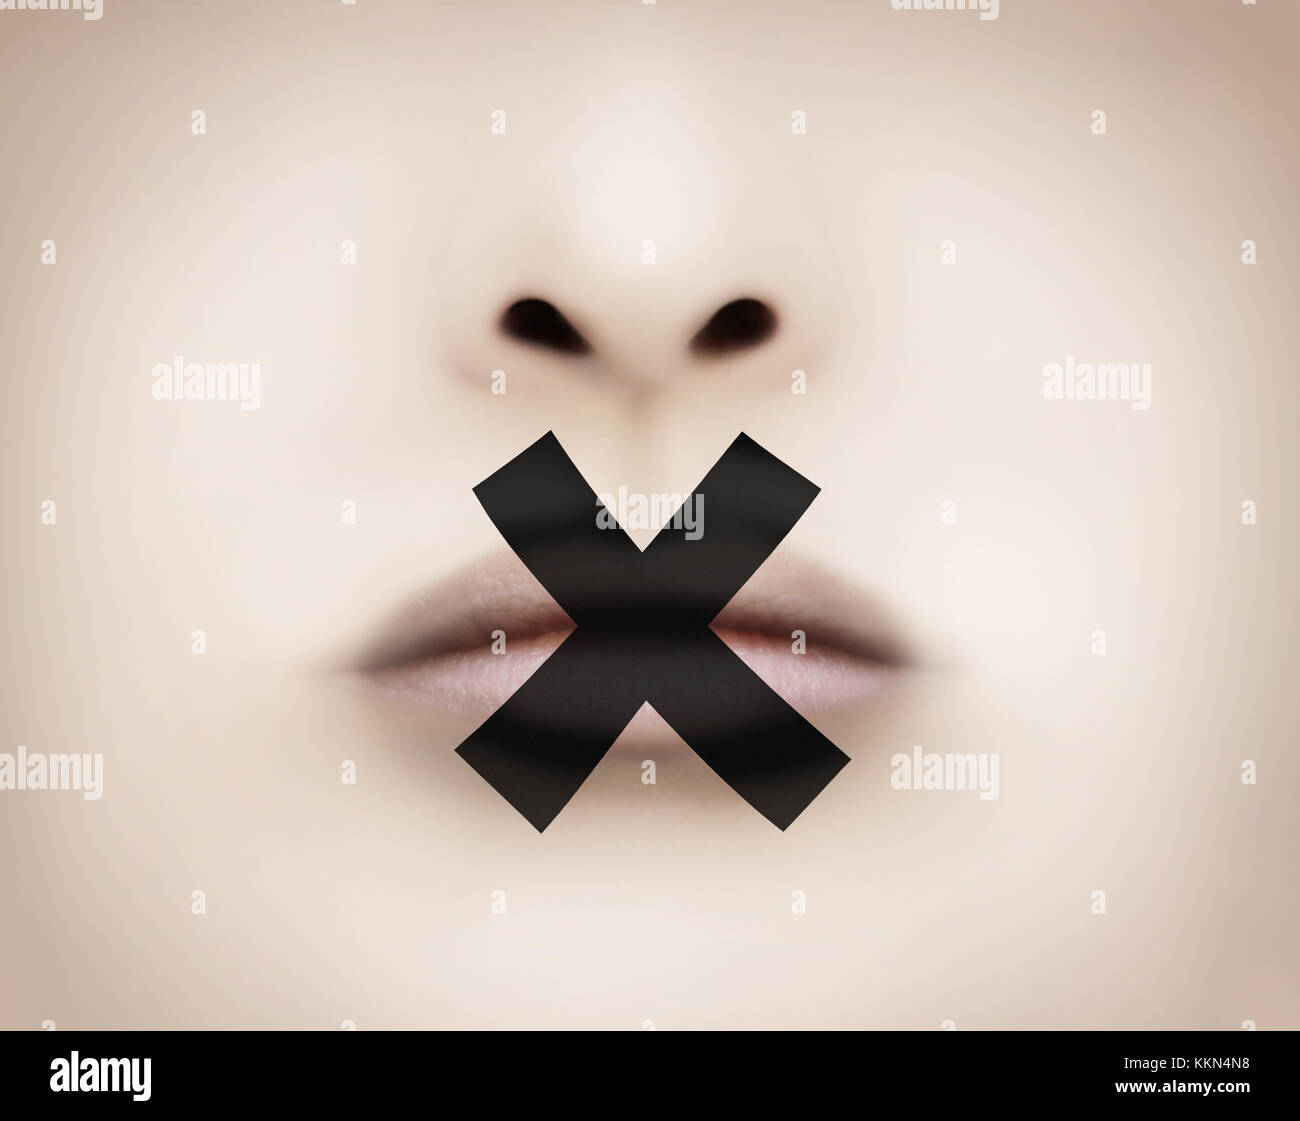 Lips with black adhesive tape symbolizing censorship Stock Photo